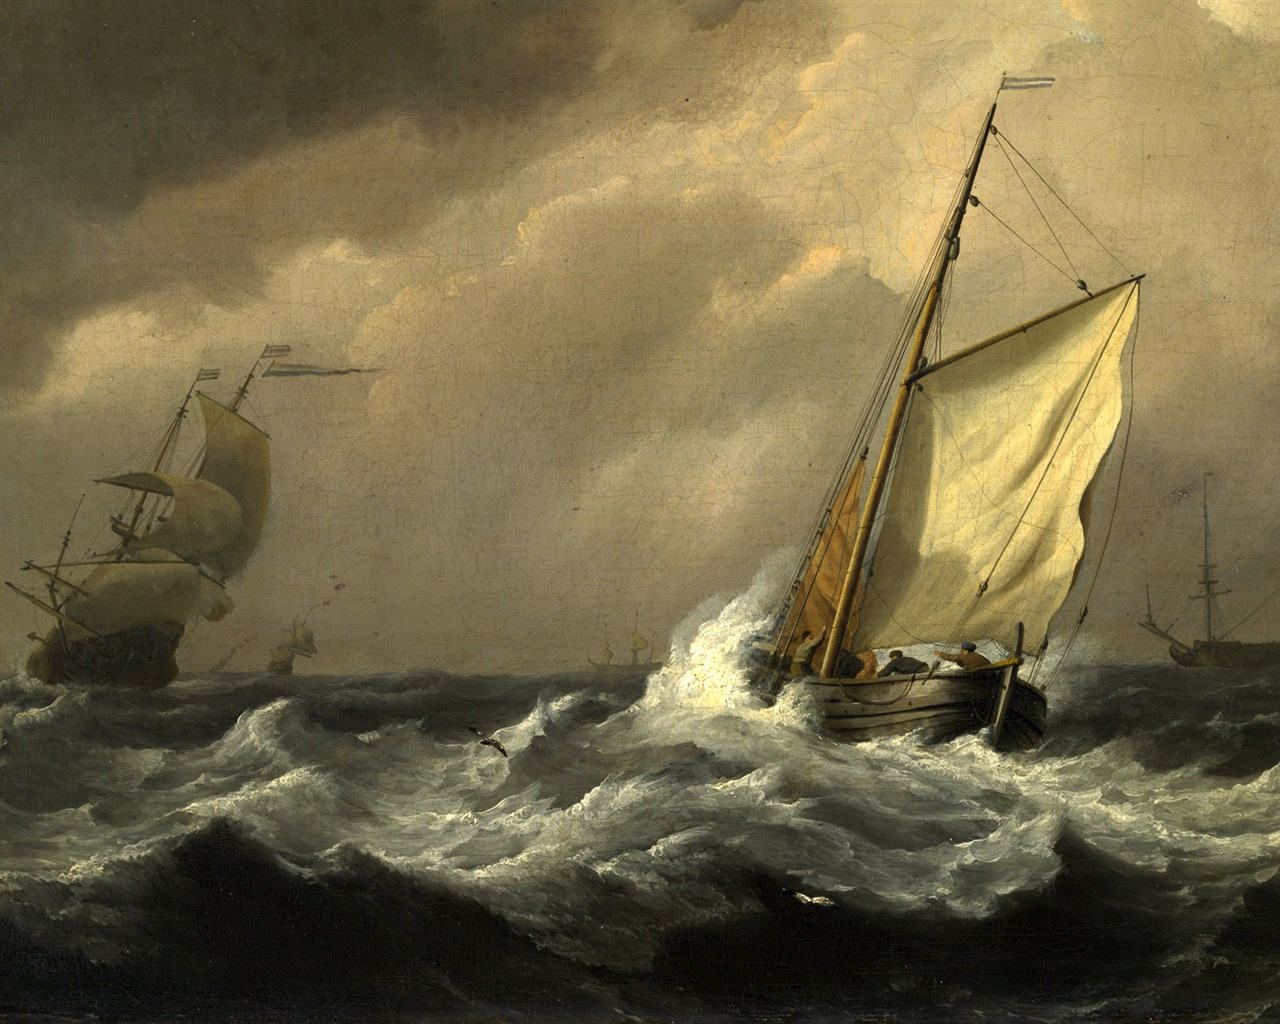 伦敦画廊帆船 壁纸(二)14 - 1280x1024